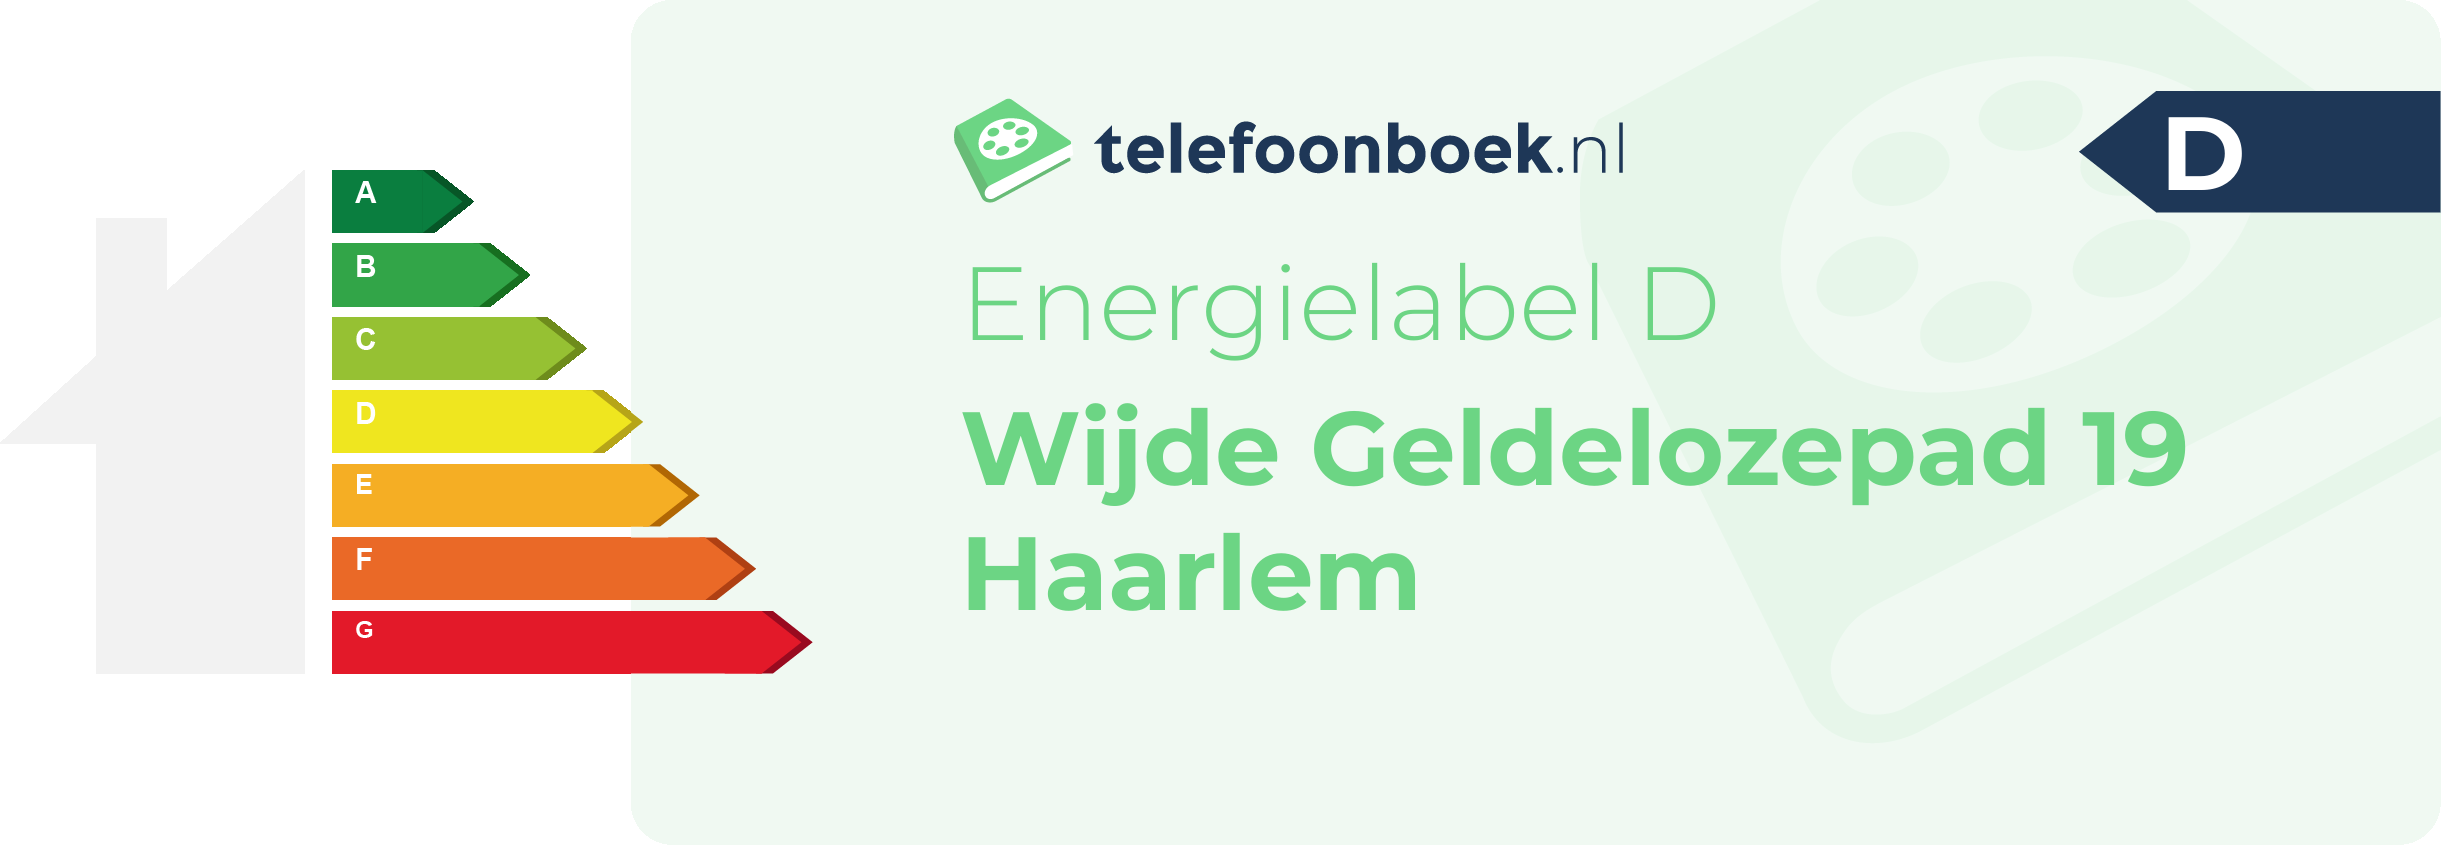 Energielabel Wijde Geldelozepad 19 Haarlem